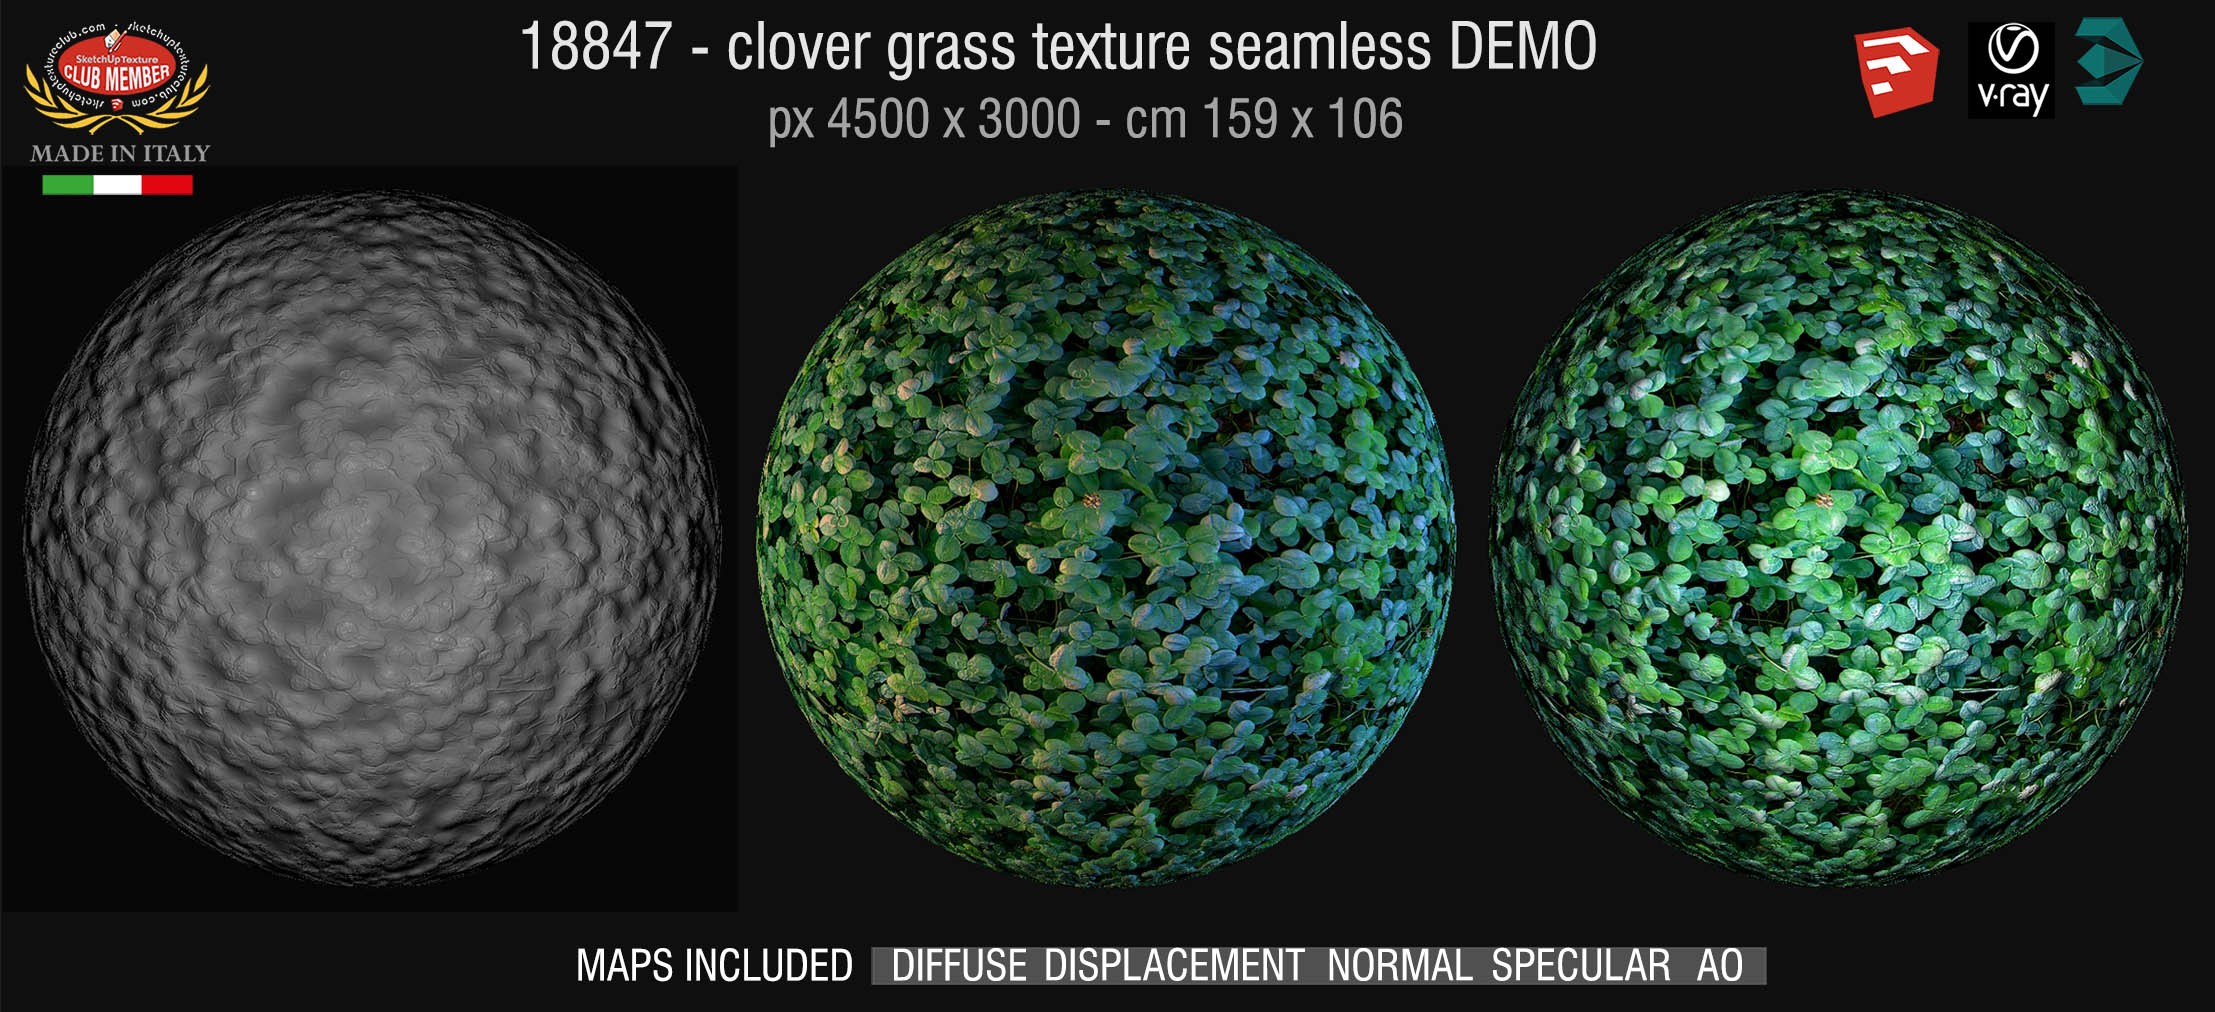 18847 HR Clover grass texture + maps DEMO